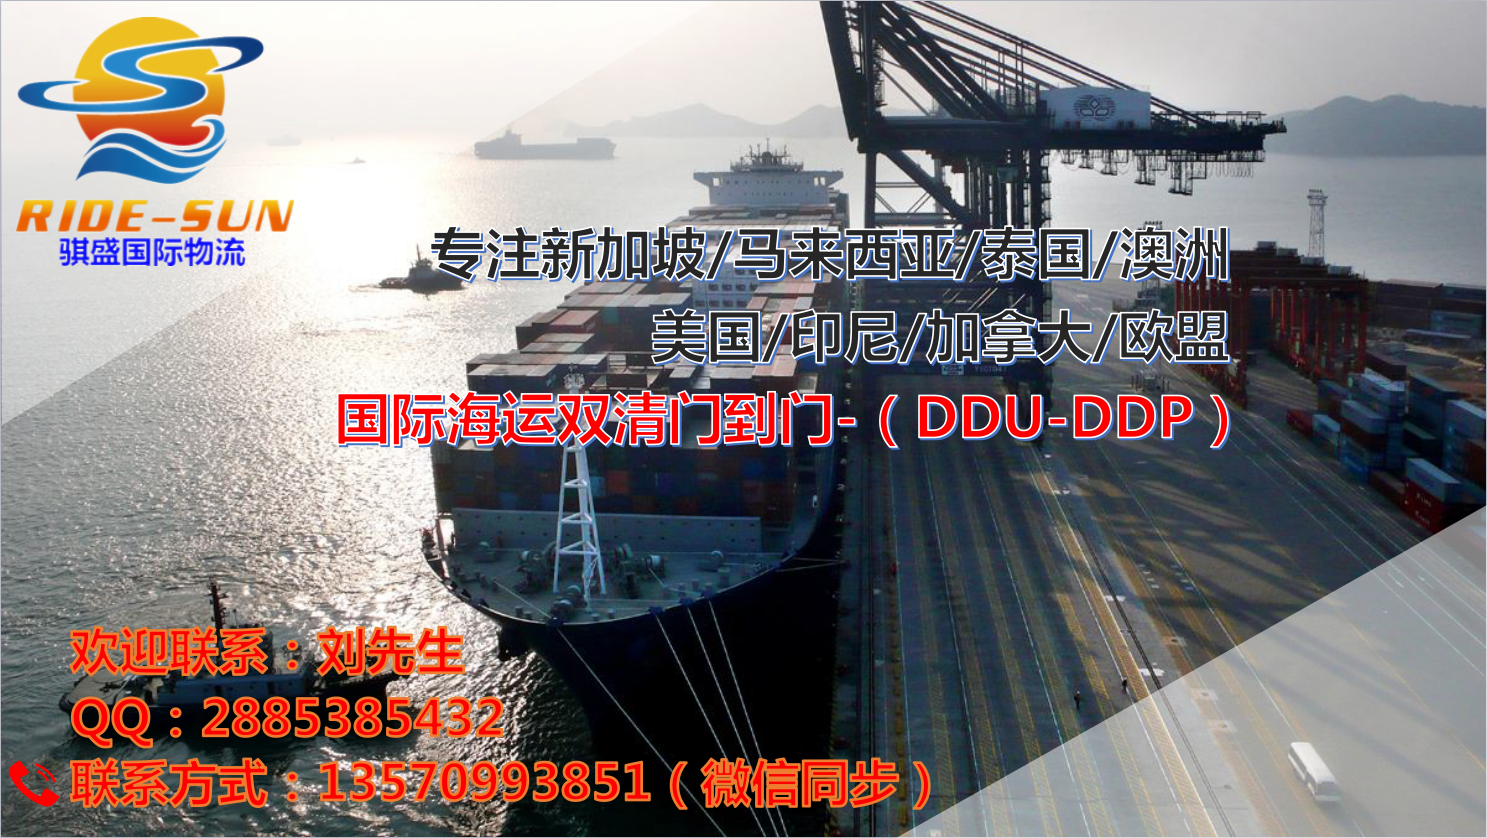 中国至迪拜海运双清门到门全包专线批发